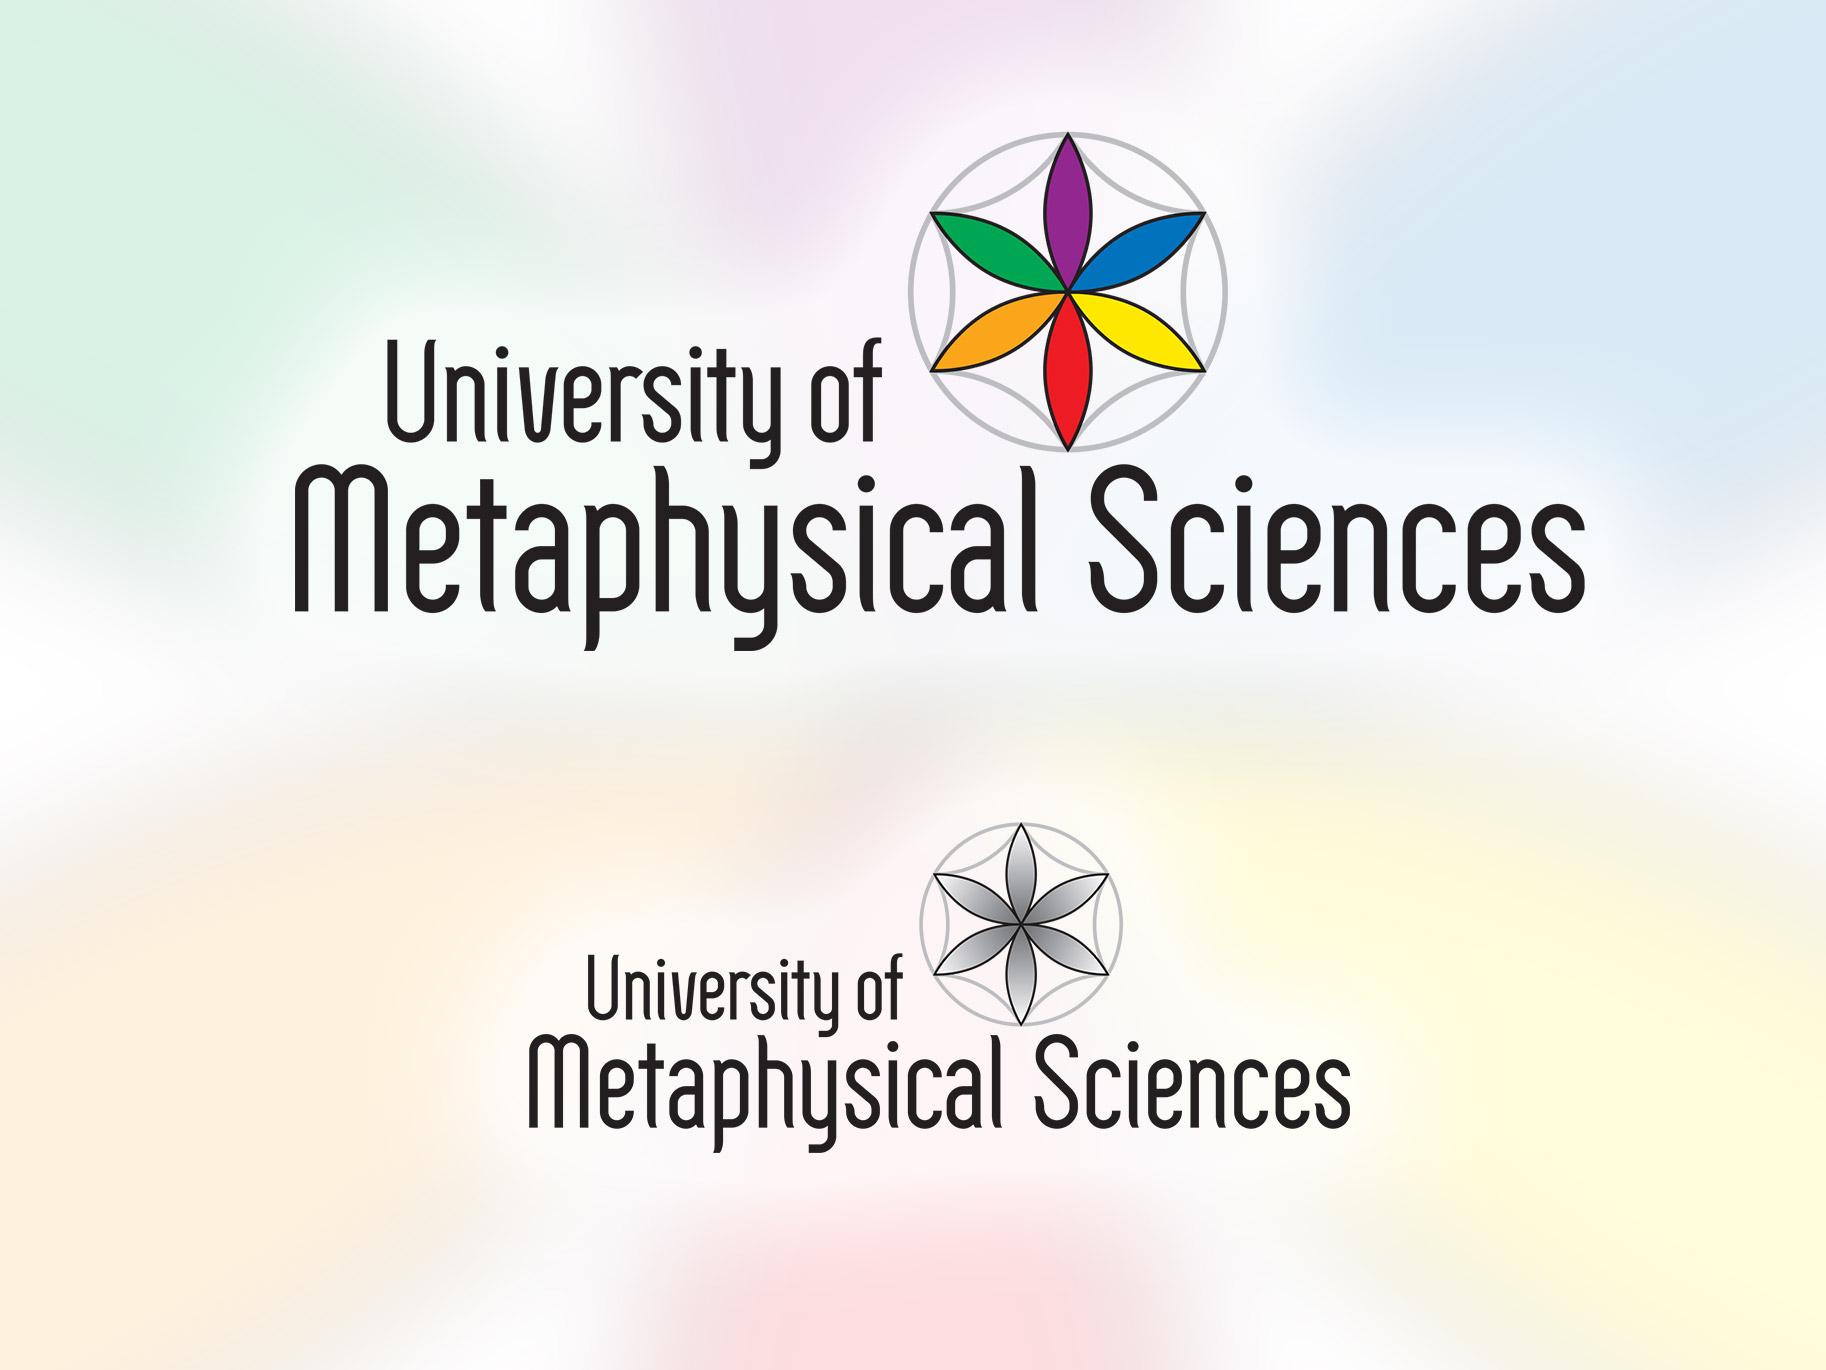 UMS Logo Design